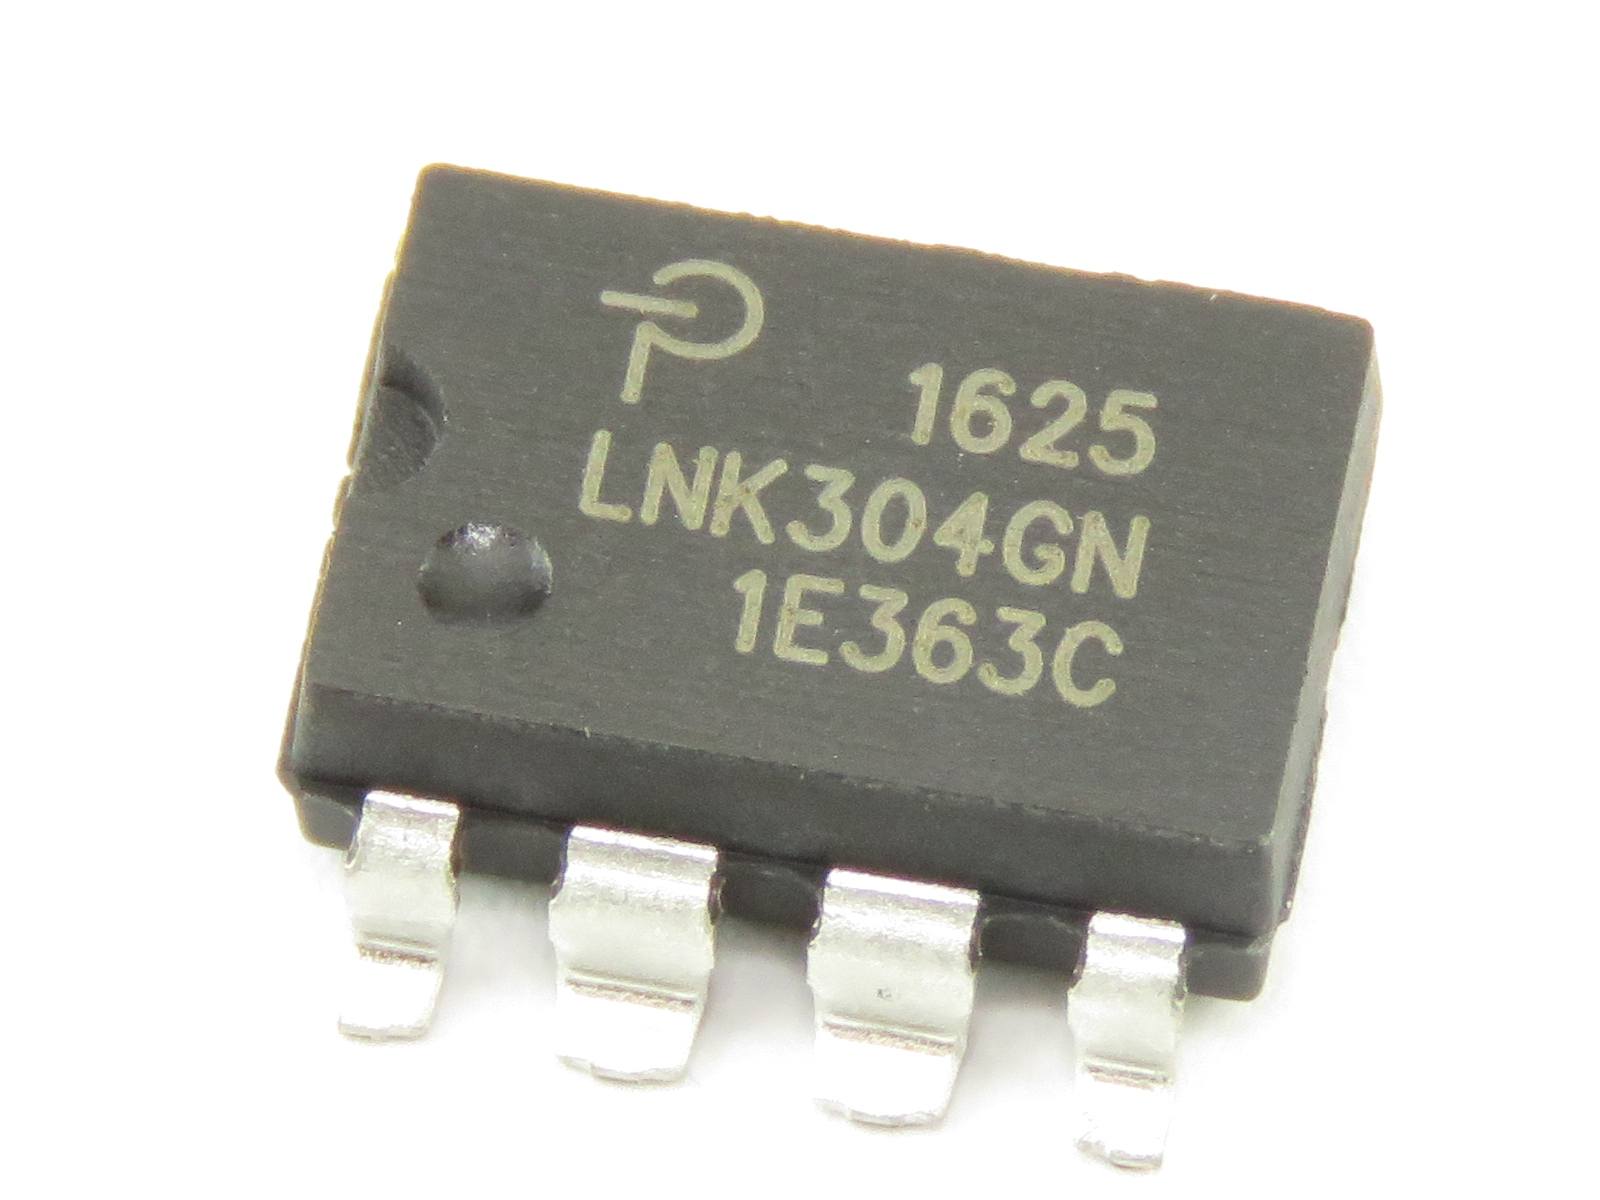 Circuit intégré LNK304GN